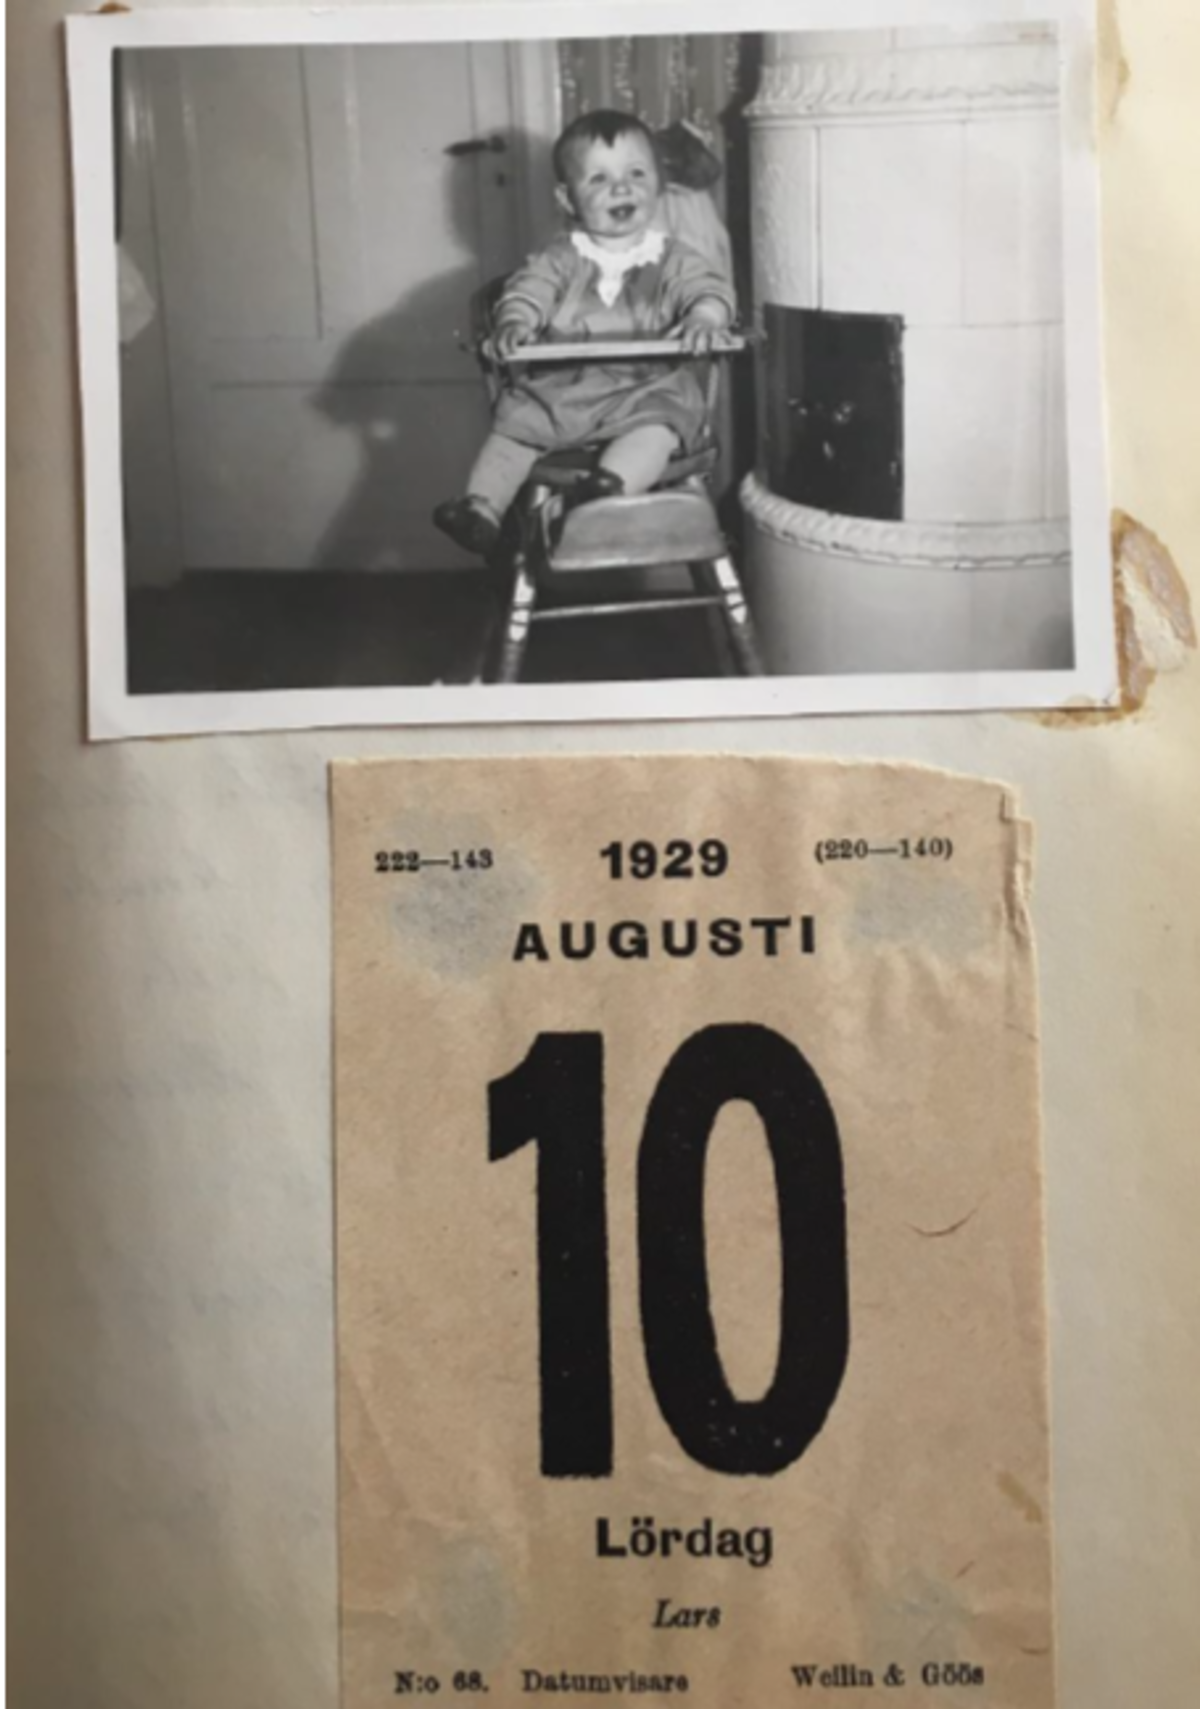 Päiväkirjan sivulla on valokuva nauravasta lapsesta, joka istuu syöttötuolissa kaakeliuunin vieressä. Kuvan alapuolella on almanakasta repäisty lehti, jossa lukea 1929 AUGUSTI 10 Lördag Lars.